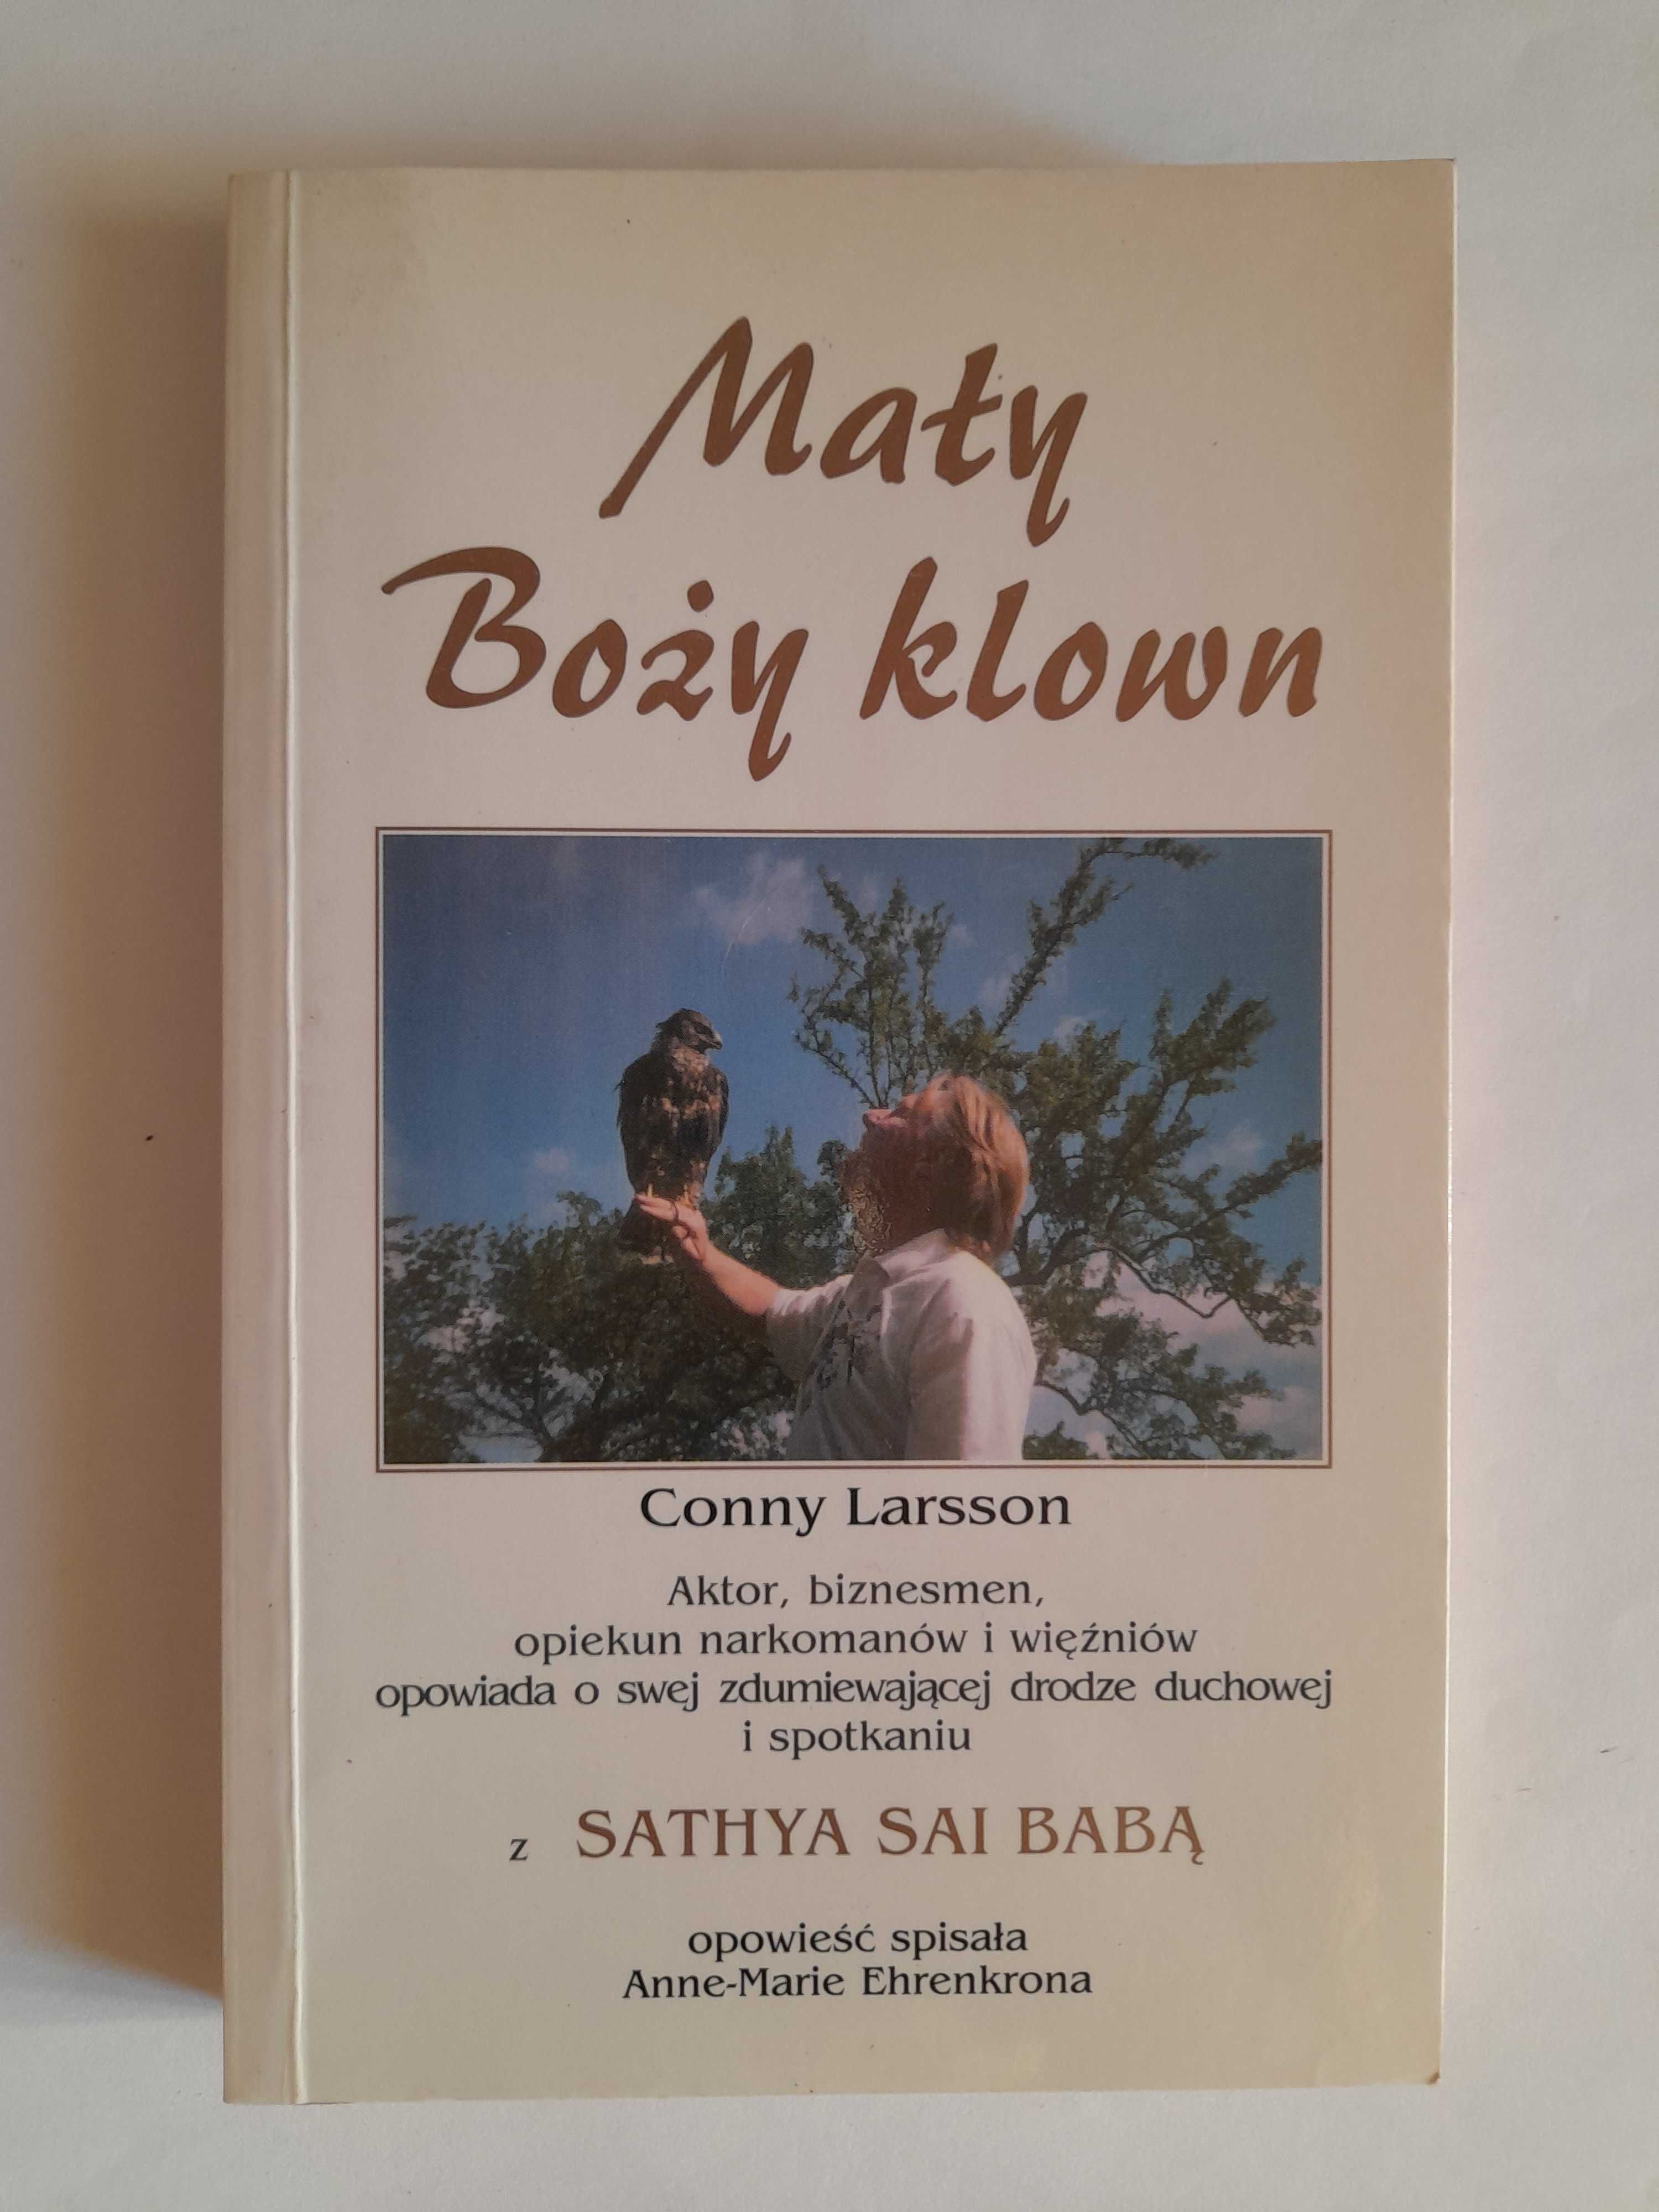 Mały BOŻY klown - Conny Larsson - SAI BABA